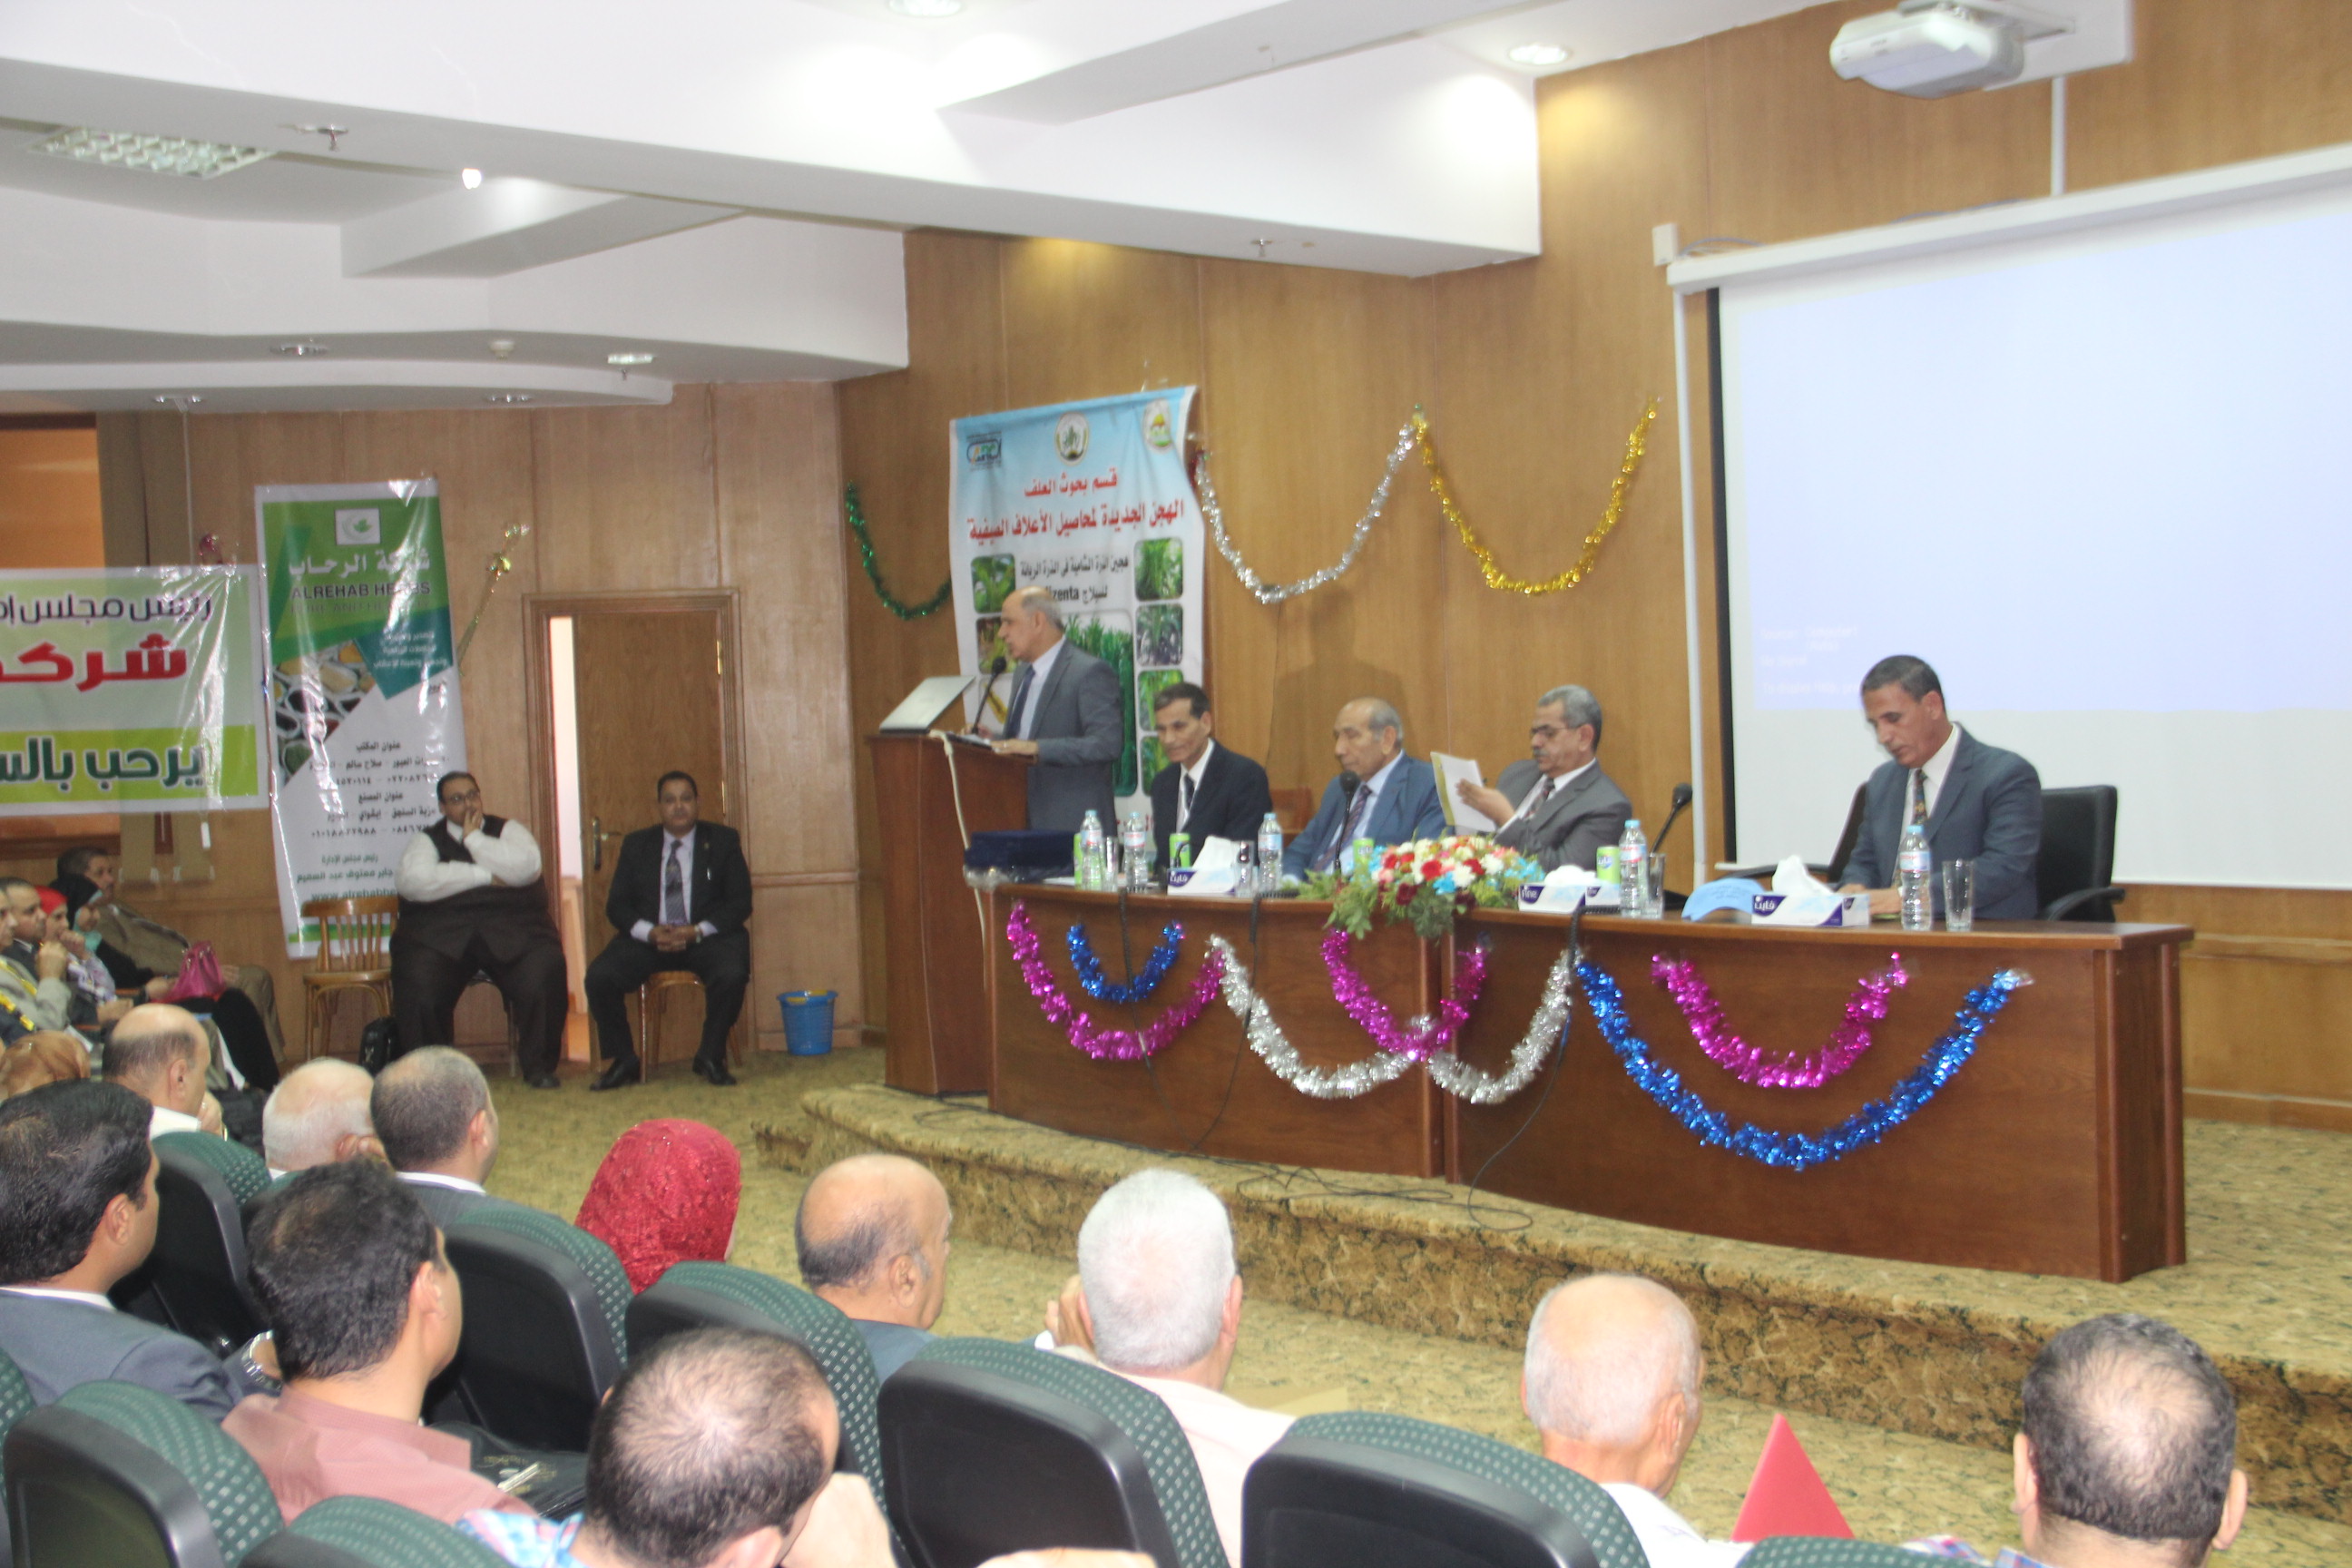  بالصور : رئيس جامعة كفر الشيخ يفتتح المؤتمرالدولي الحادي عشر لتربية النبات بكلية الزراعة